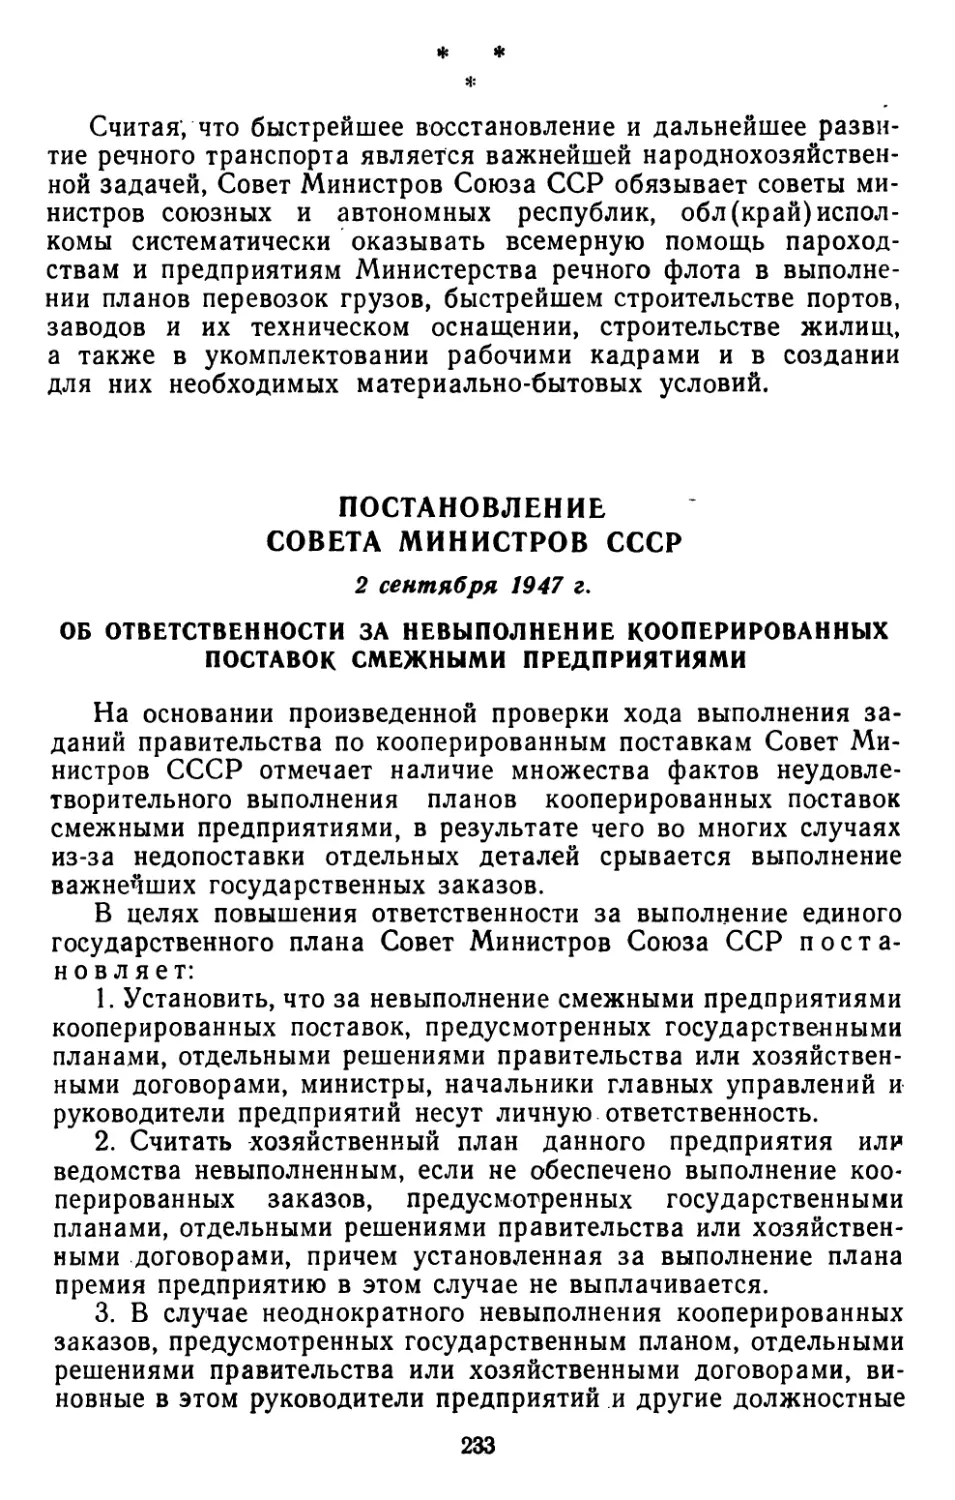 Постановление Совета Министров СССР, 2 сентября 1947 г. Об ответственности за невыполнение кооперированных поставок смежными предприятиями